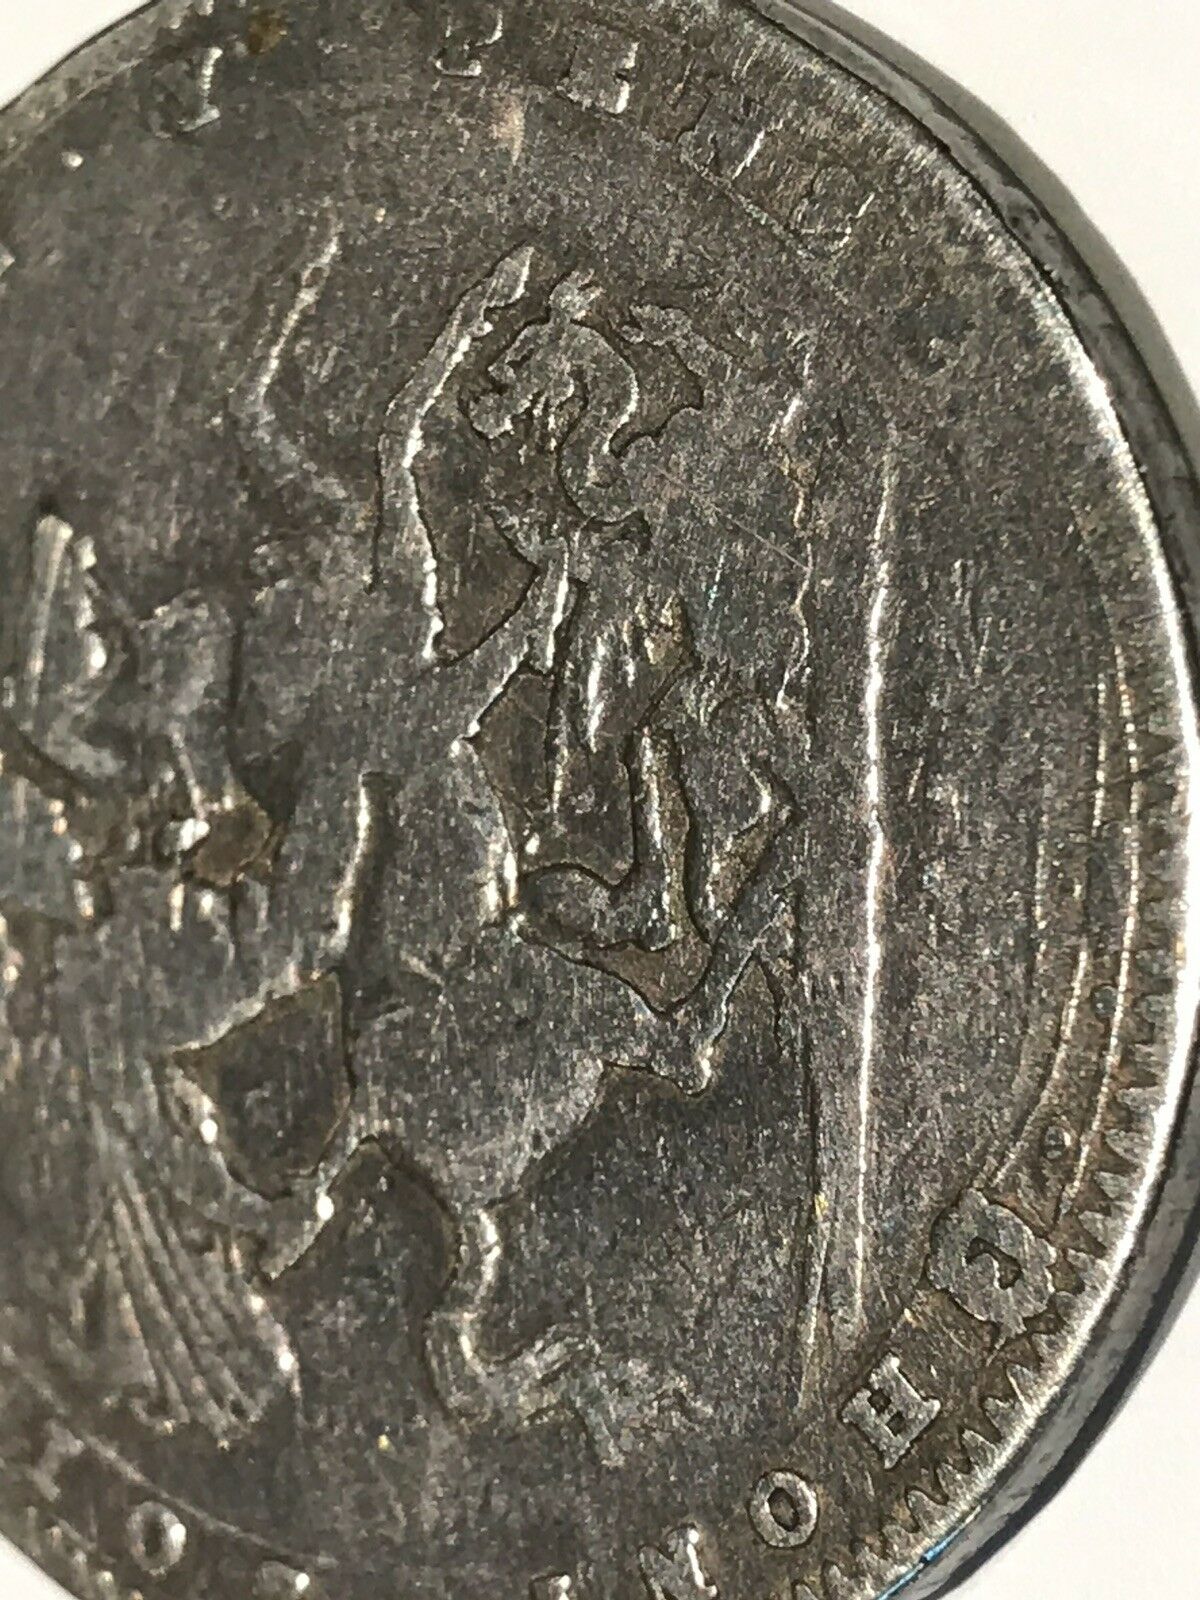 1820 Georgius III Silver Coin.